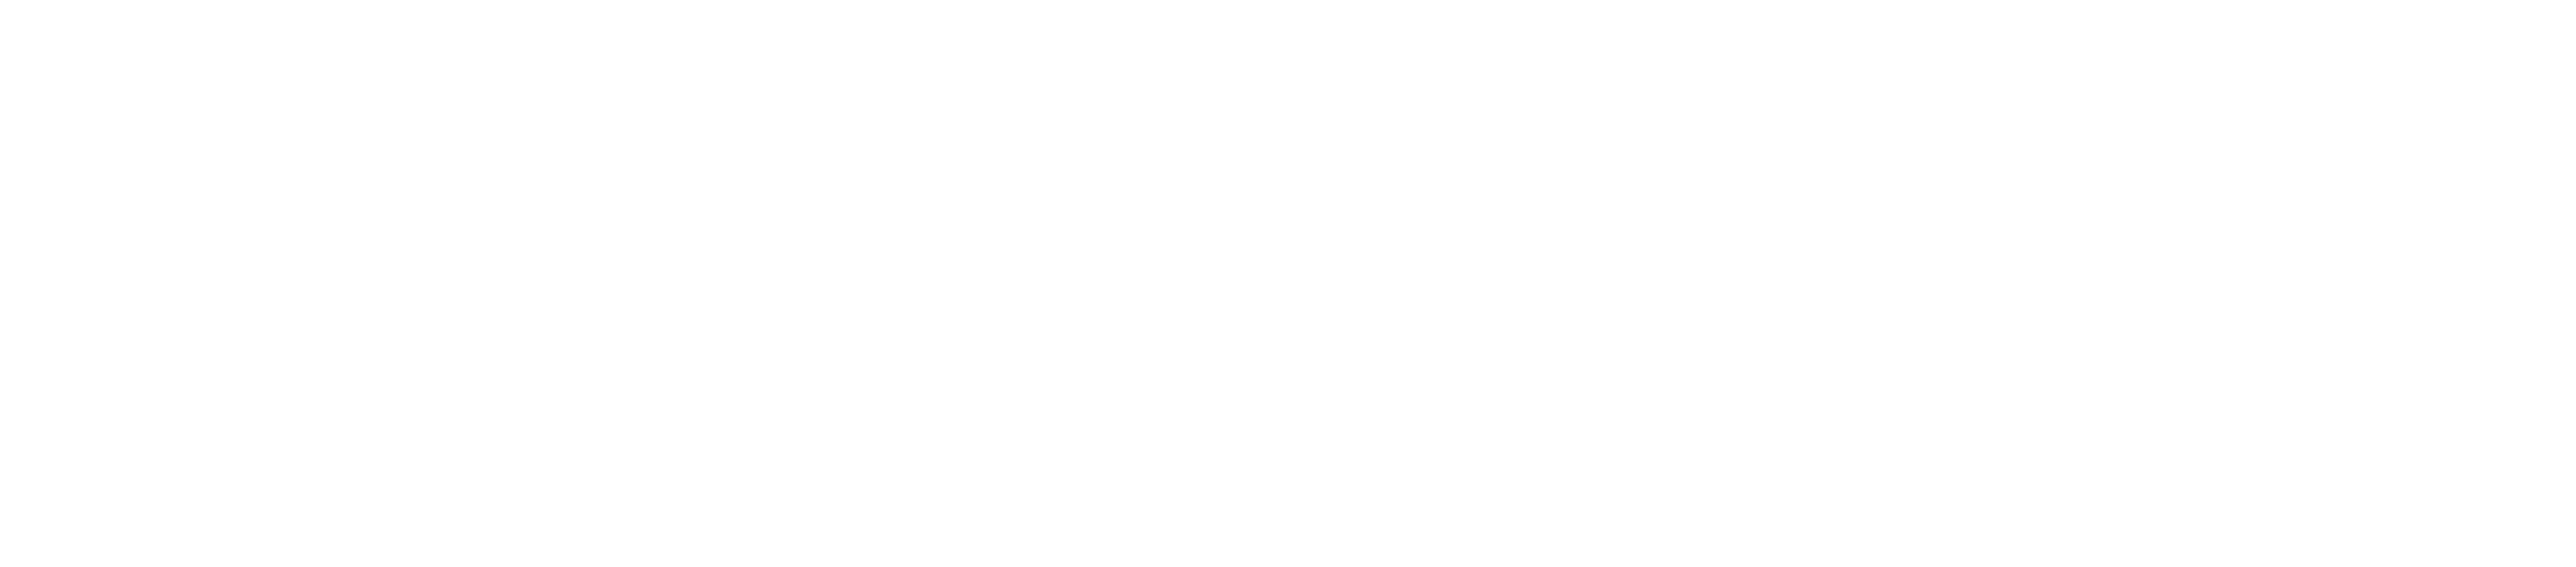 StepAhead